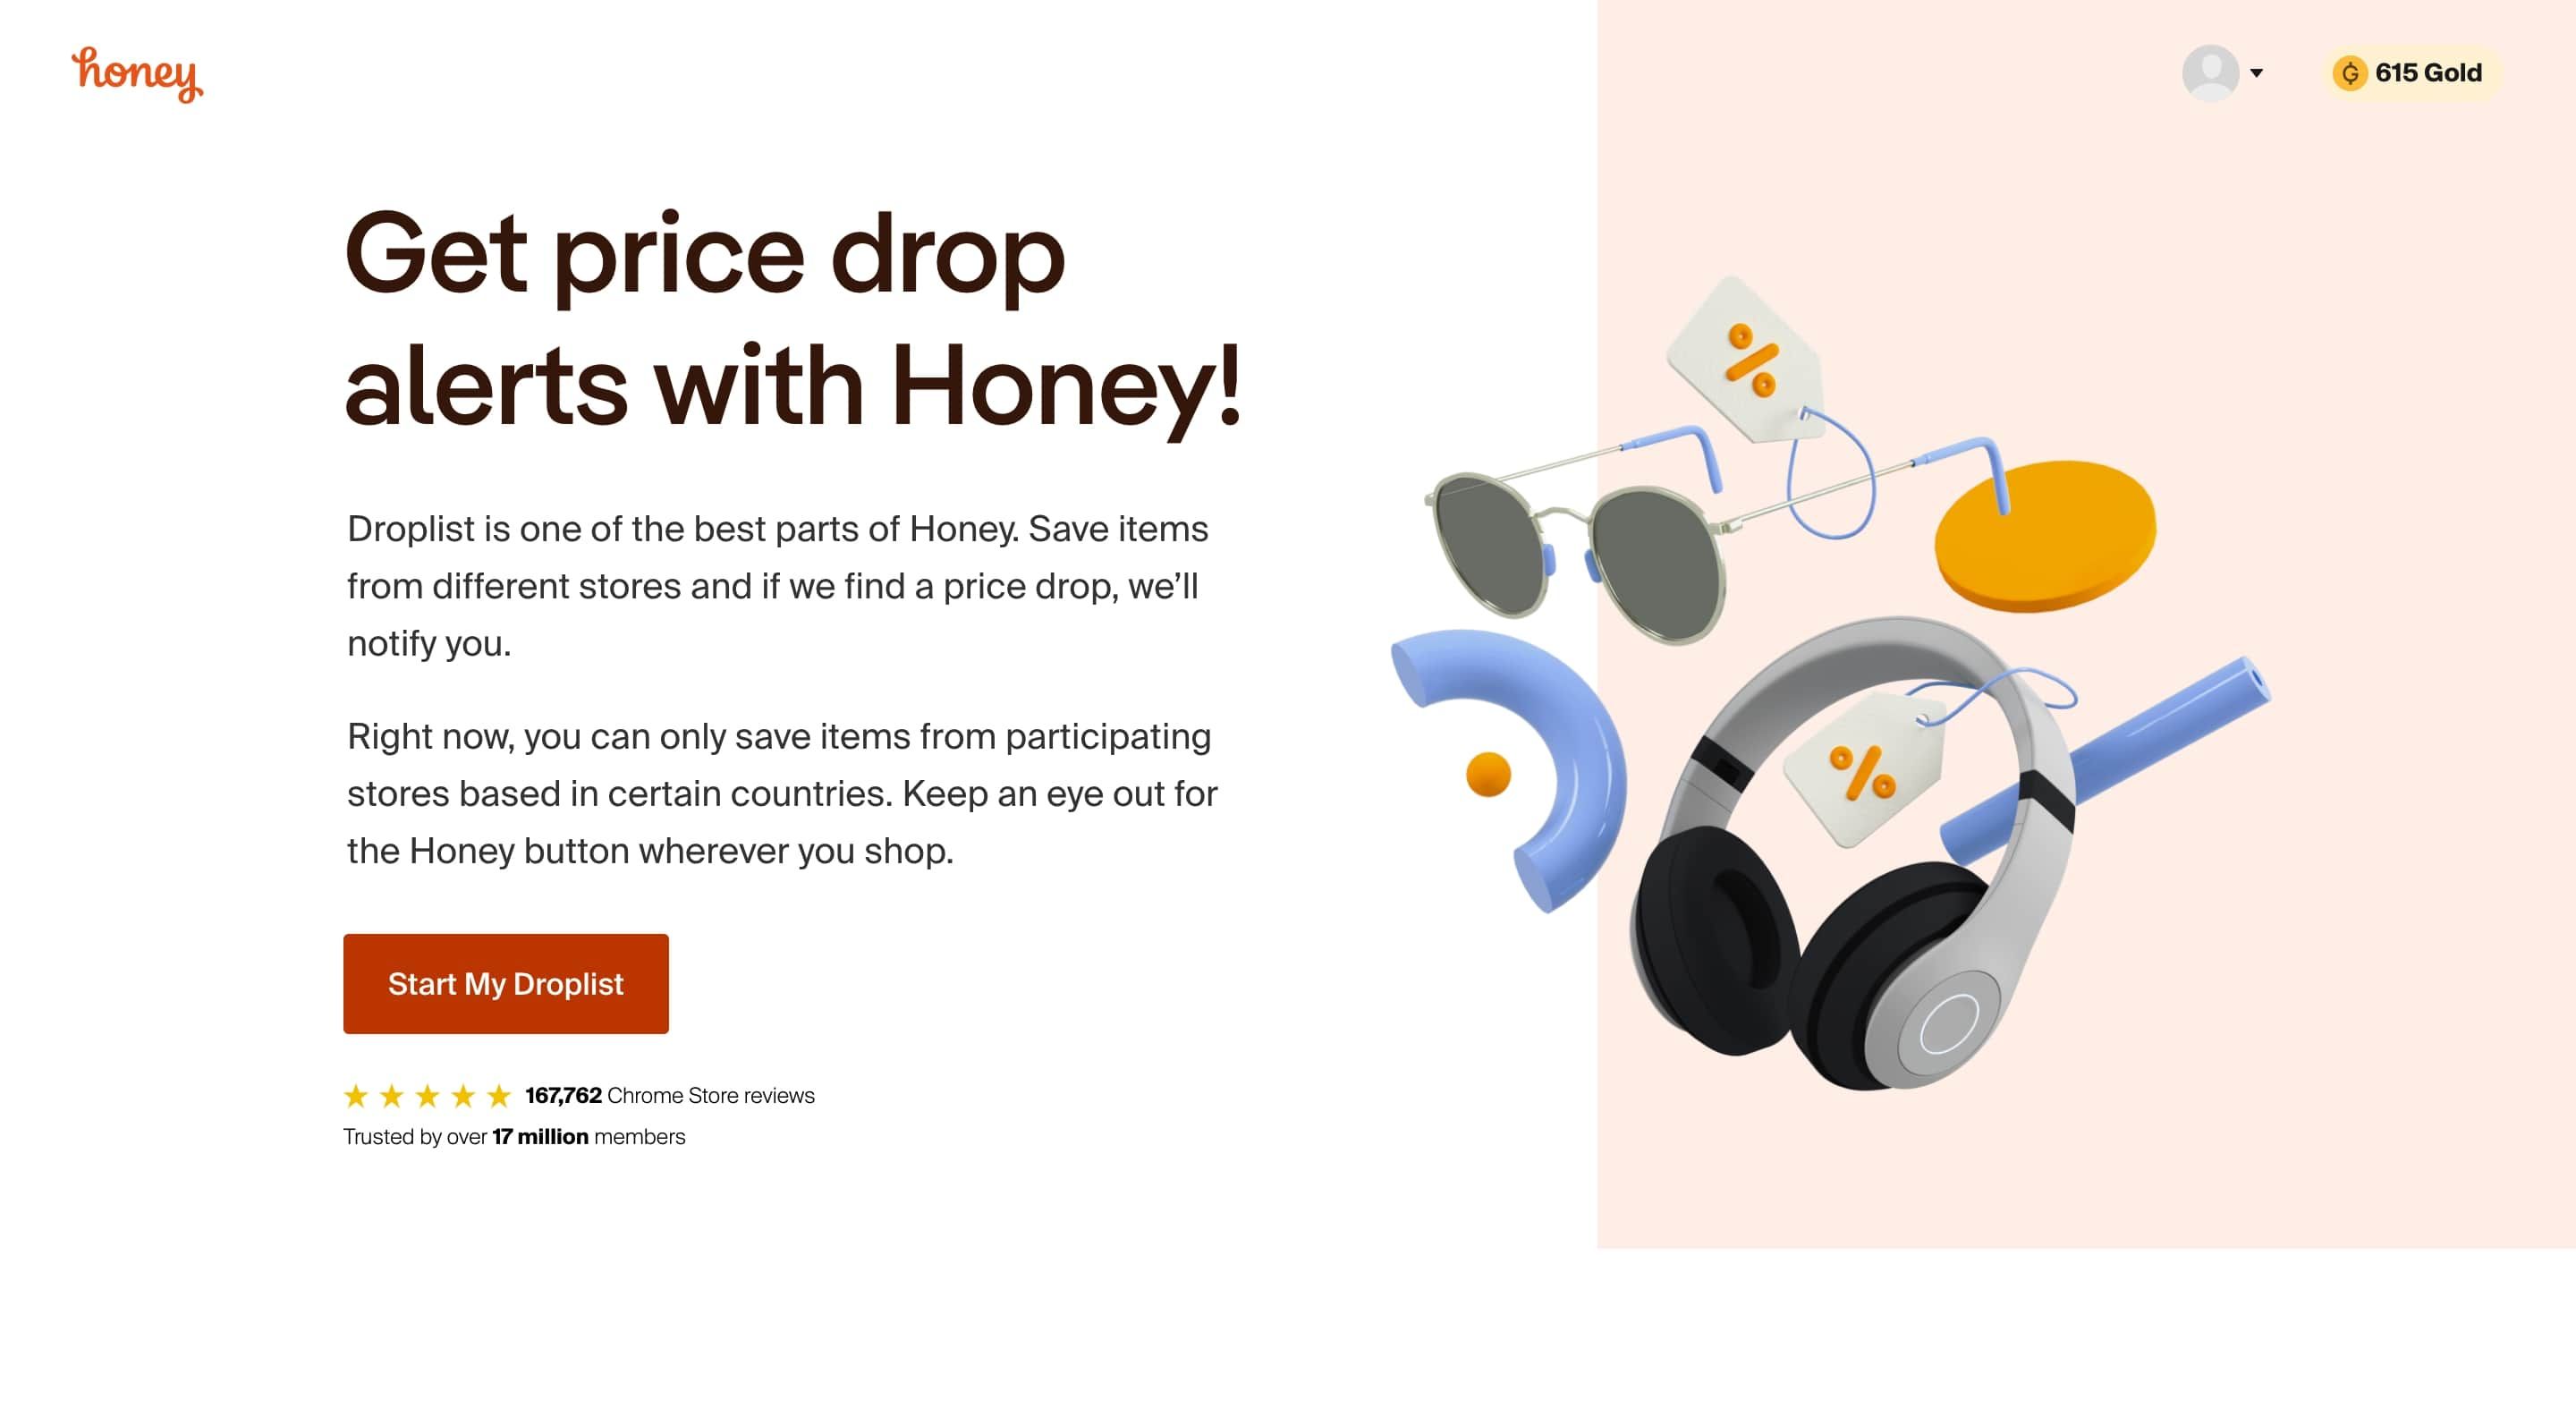 Get price alert drops with Honey screenshot